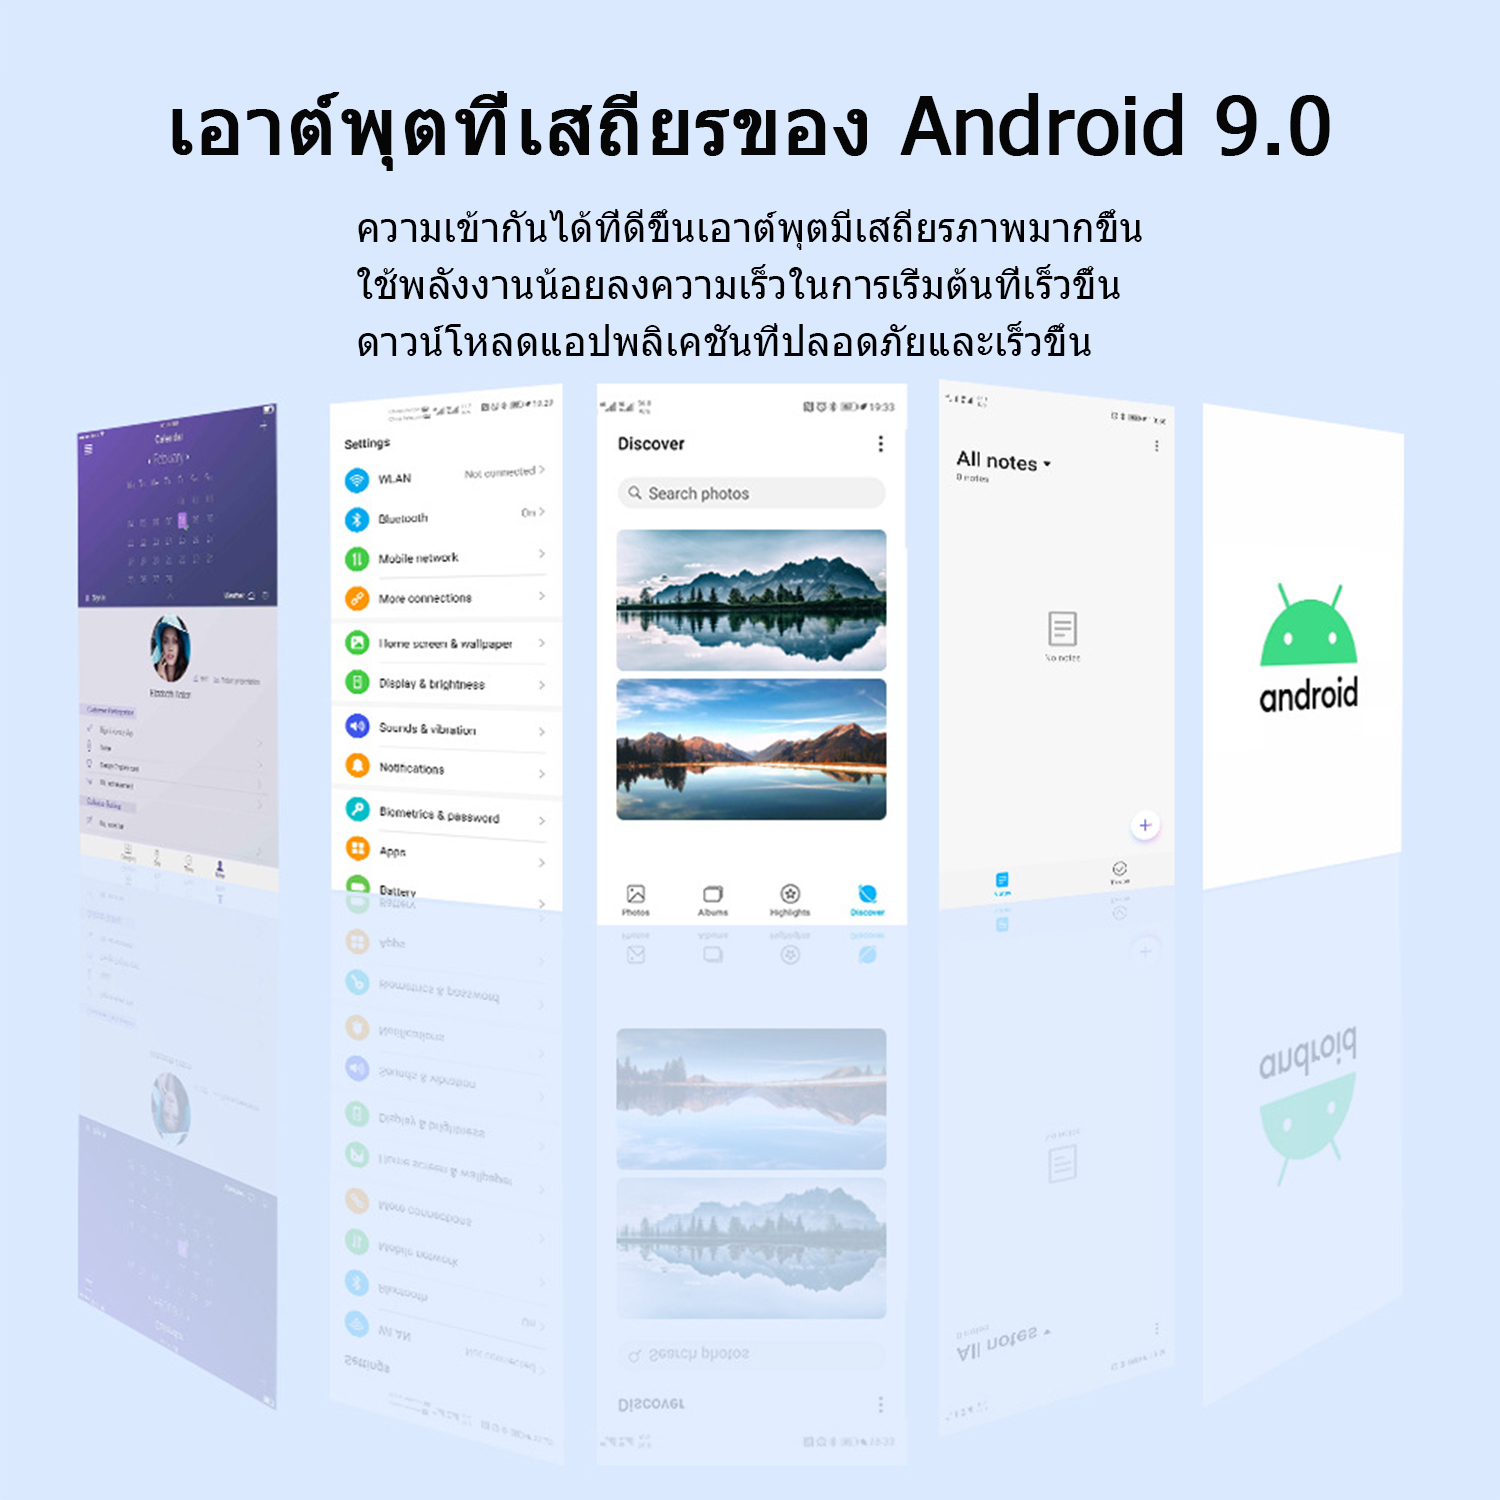 ข้อมูลประกอบของ 2021 HOT Tablets ศูนย์ไทย Realmi แท็บเล็ต แท็บเล็ต แท็บเล็ตแอนดรอยด์ ขนาดหน้าจอ 10.1 นิ้ว เพรียวบาง กะทัดรัด ร้านค้าอย่างเป็นทางการ แท็บเล็ต Ram 8Gb + Rom 256Gb Android 9.0 ระบบ อัพเกรดชิป / มีประสิทธิภาพดีขึ้น รองรับภาษาไทยและอีกหลากหลายภาษา